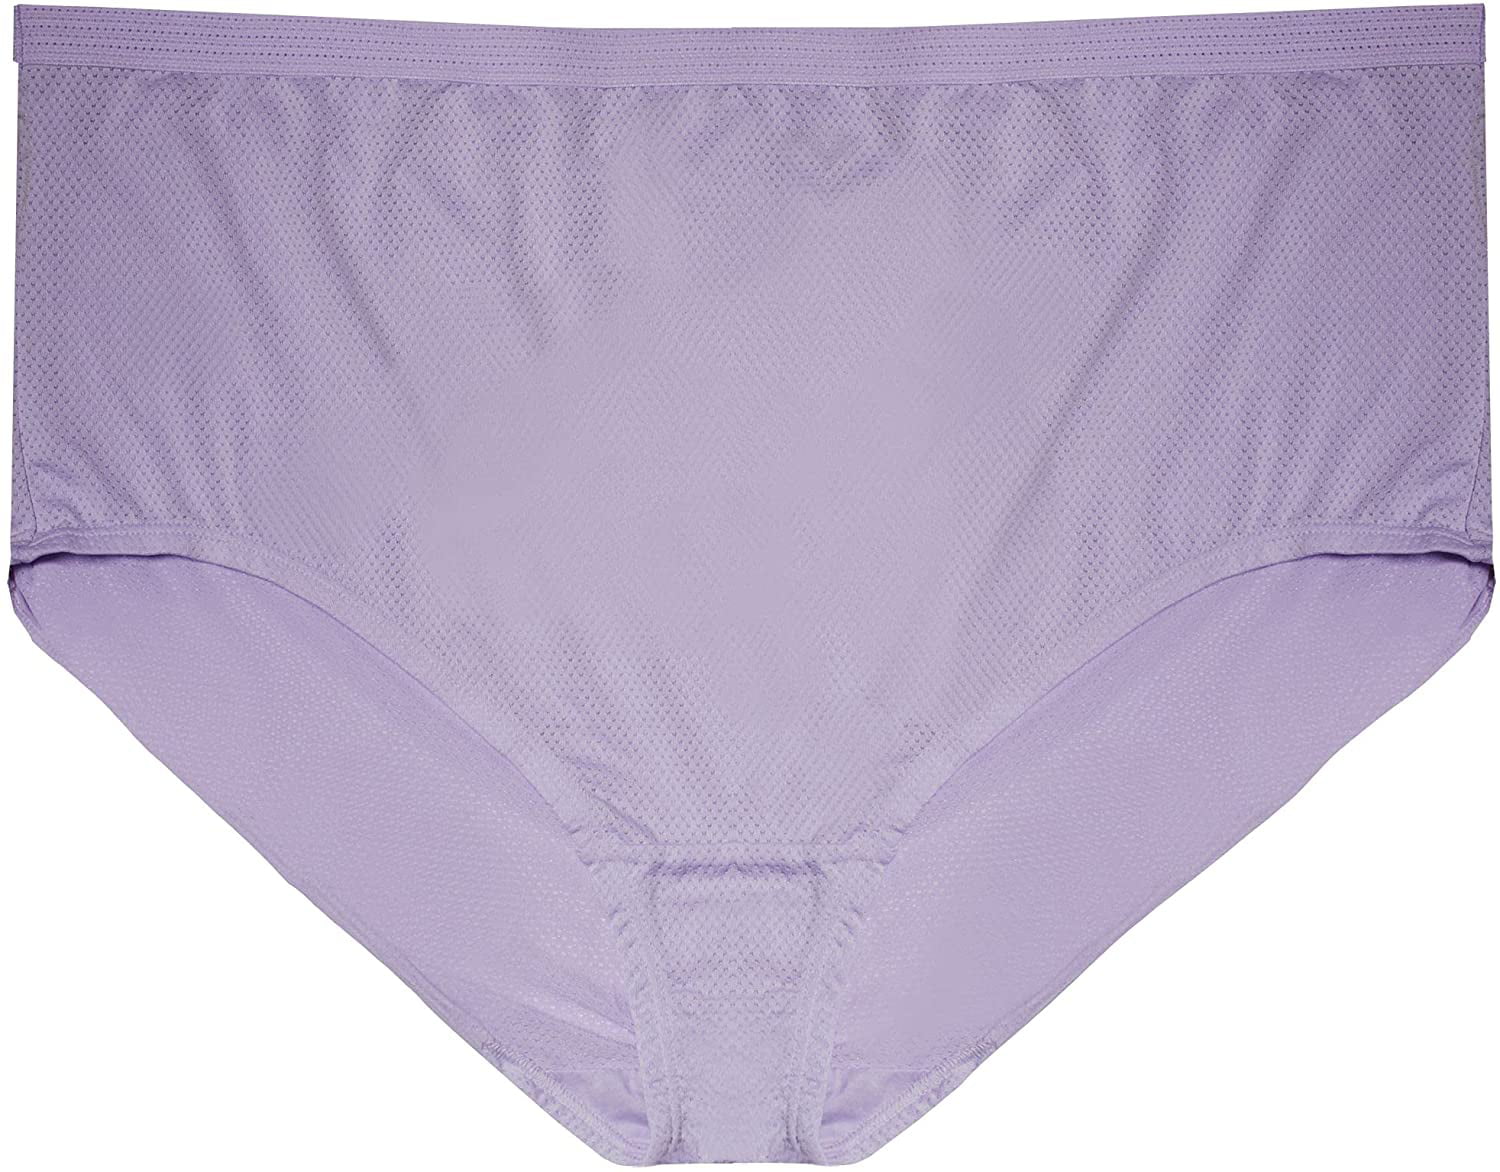 48 Pack of Womens Underwear Panties in Bulk, Wholesale Ladies